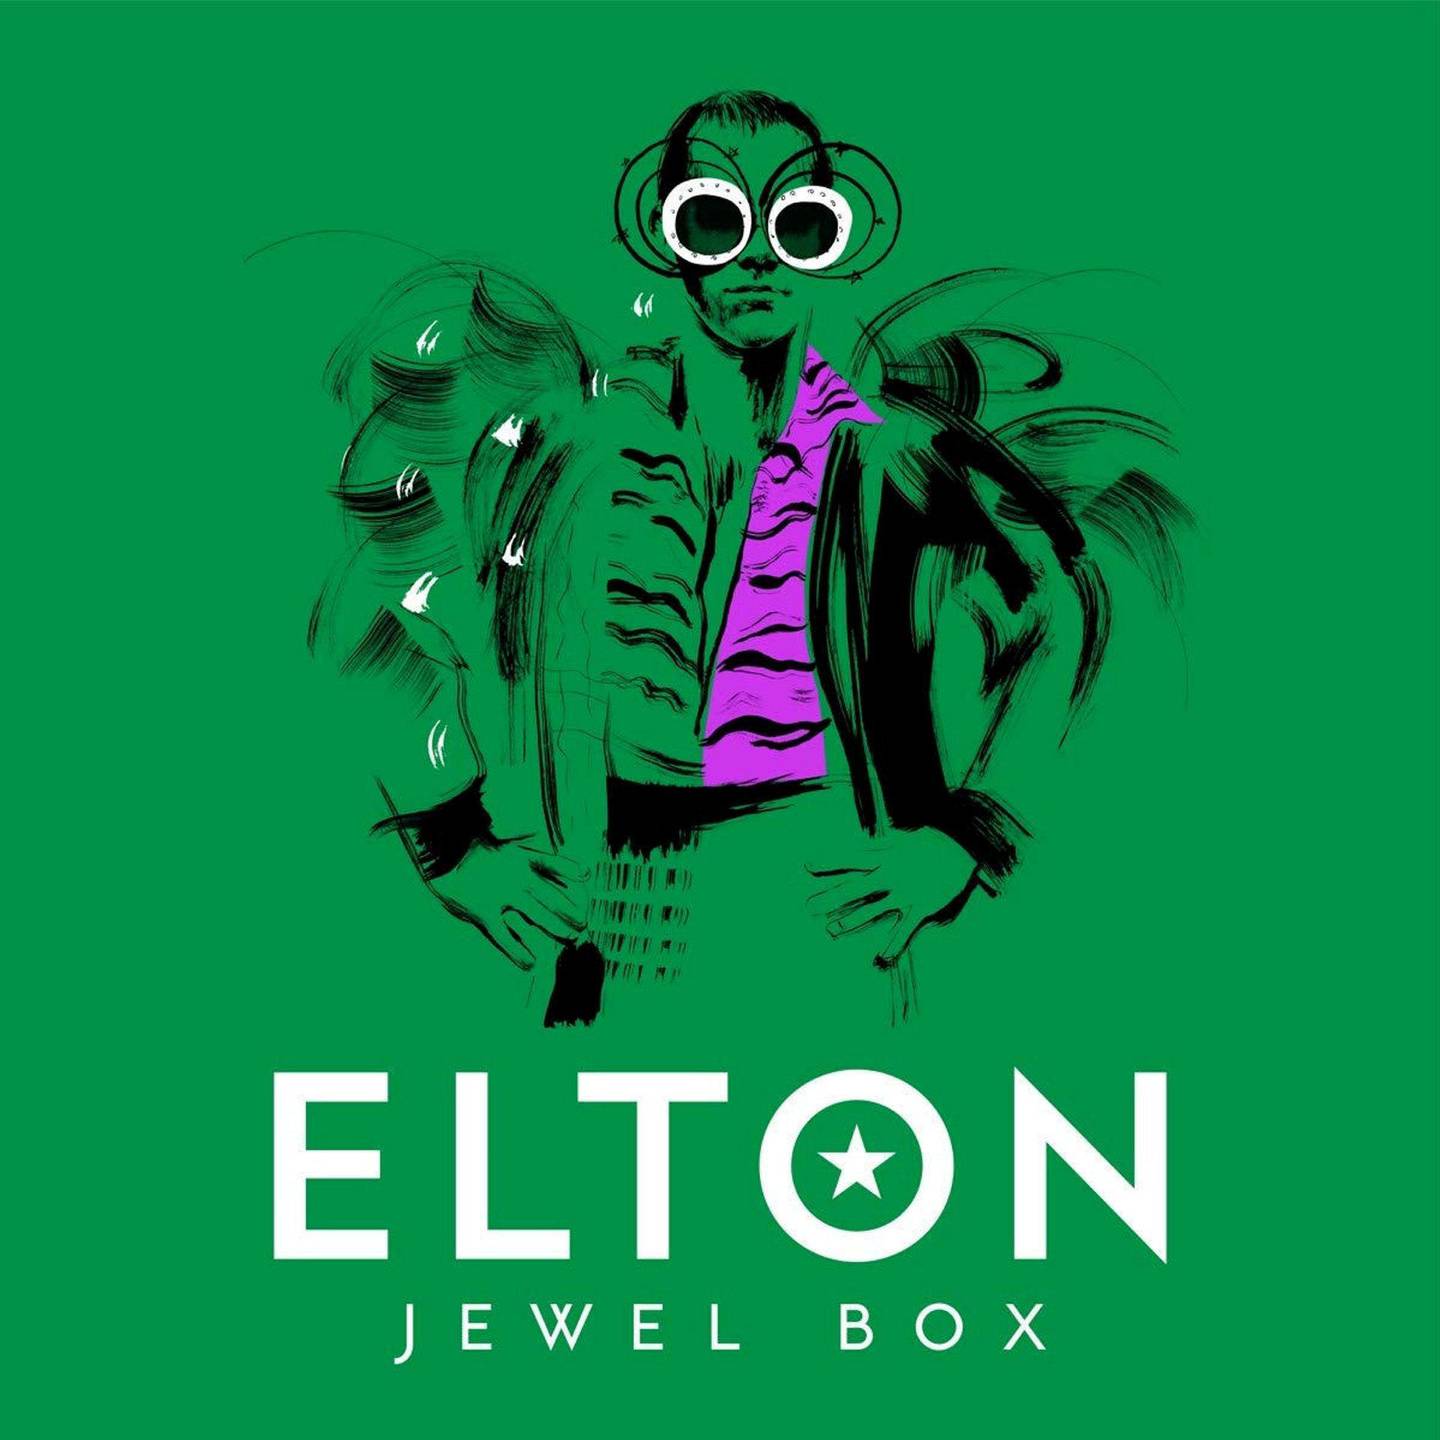 Elton John,KUL Anm Musikk B:«Jewel Box»
KUL Anm Musikk C:Universal